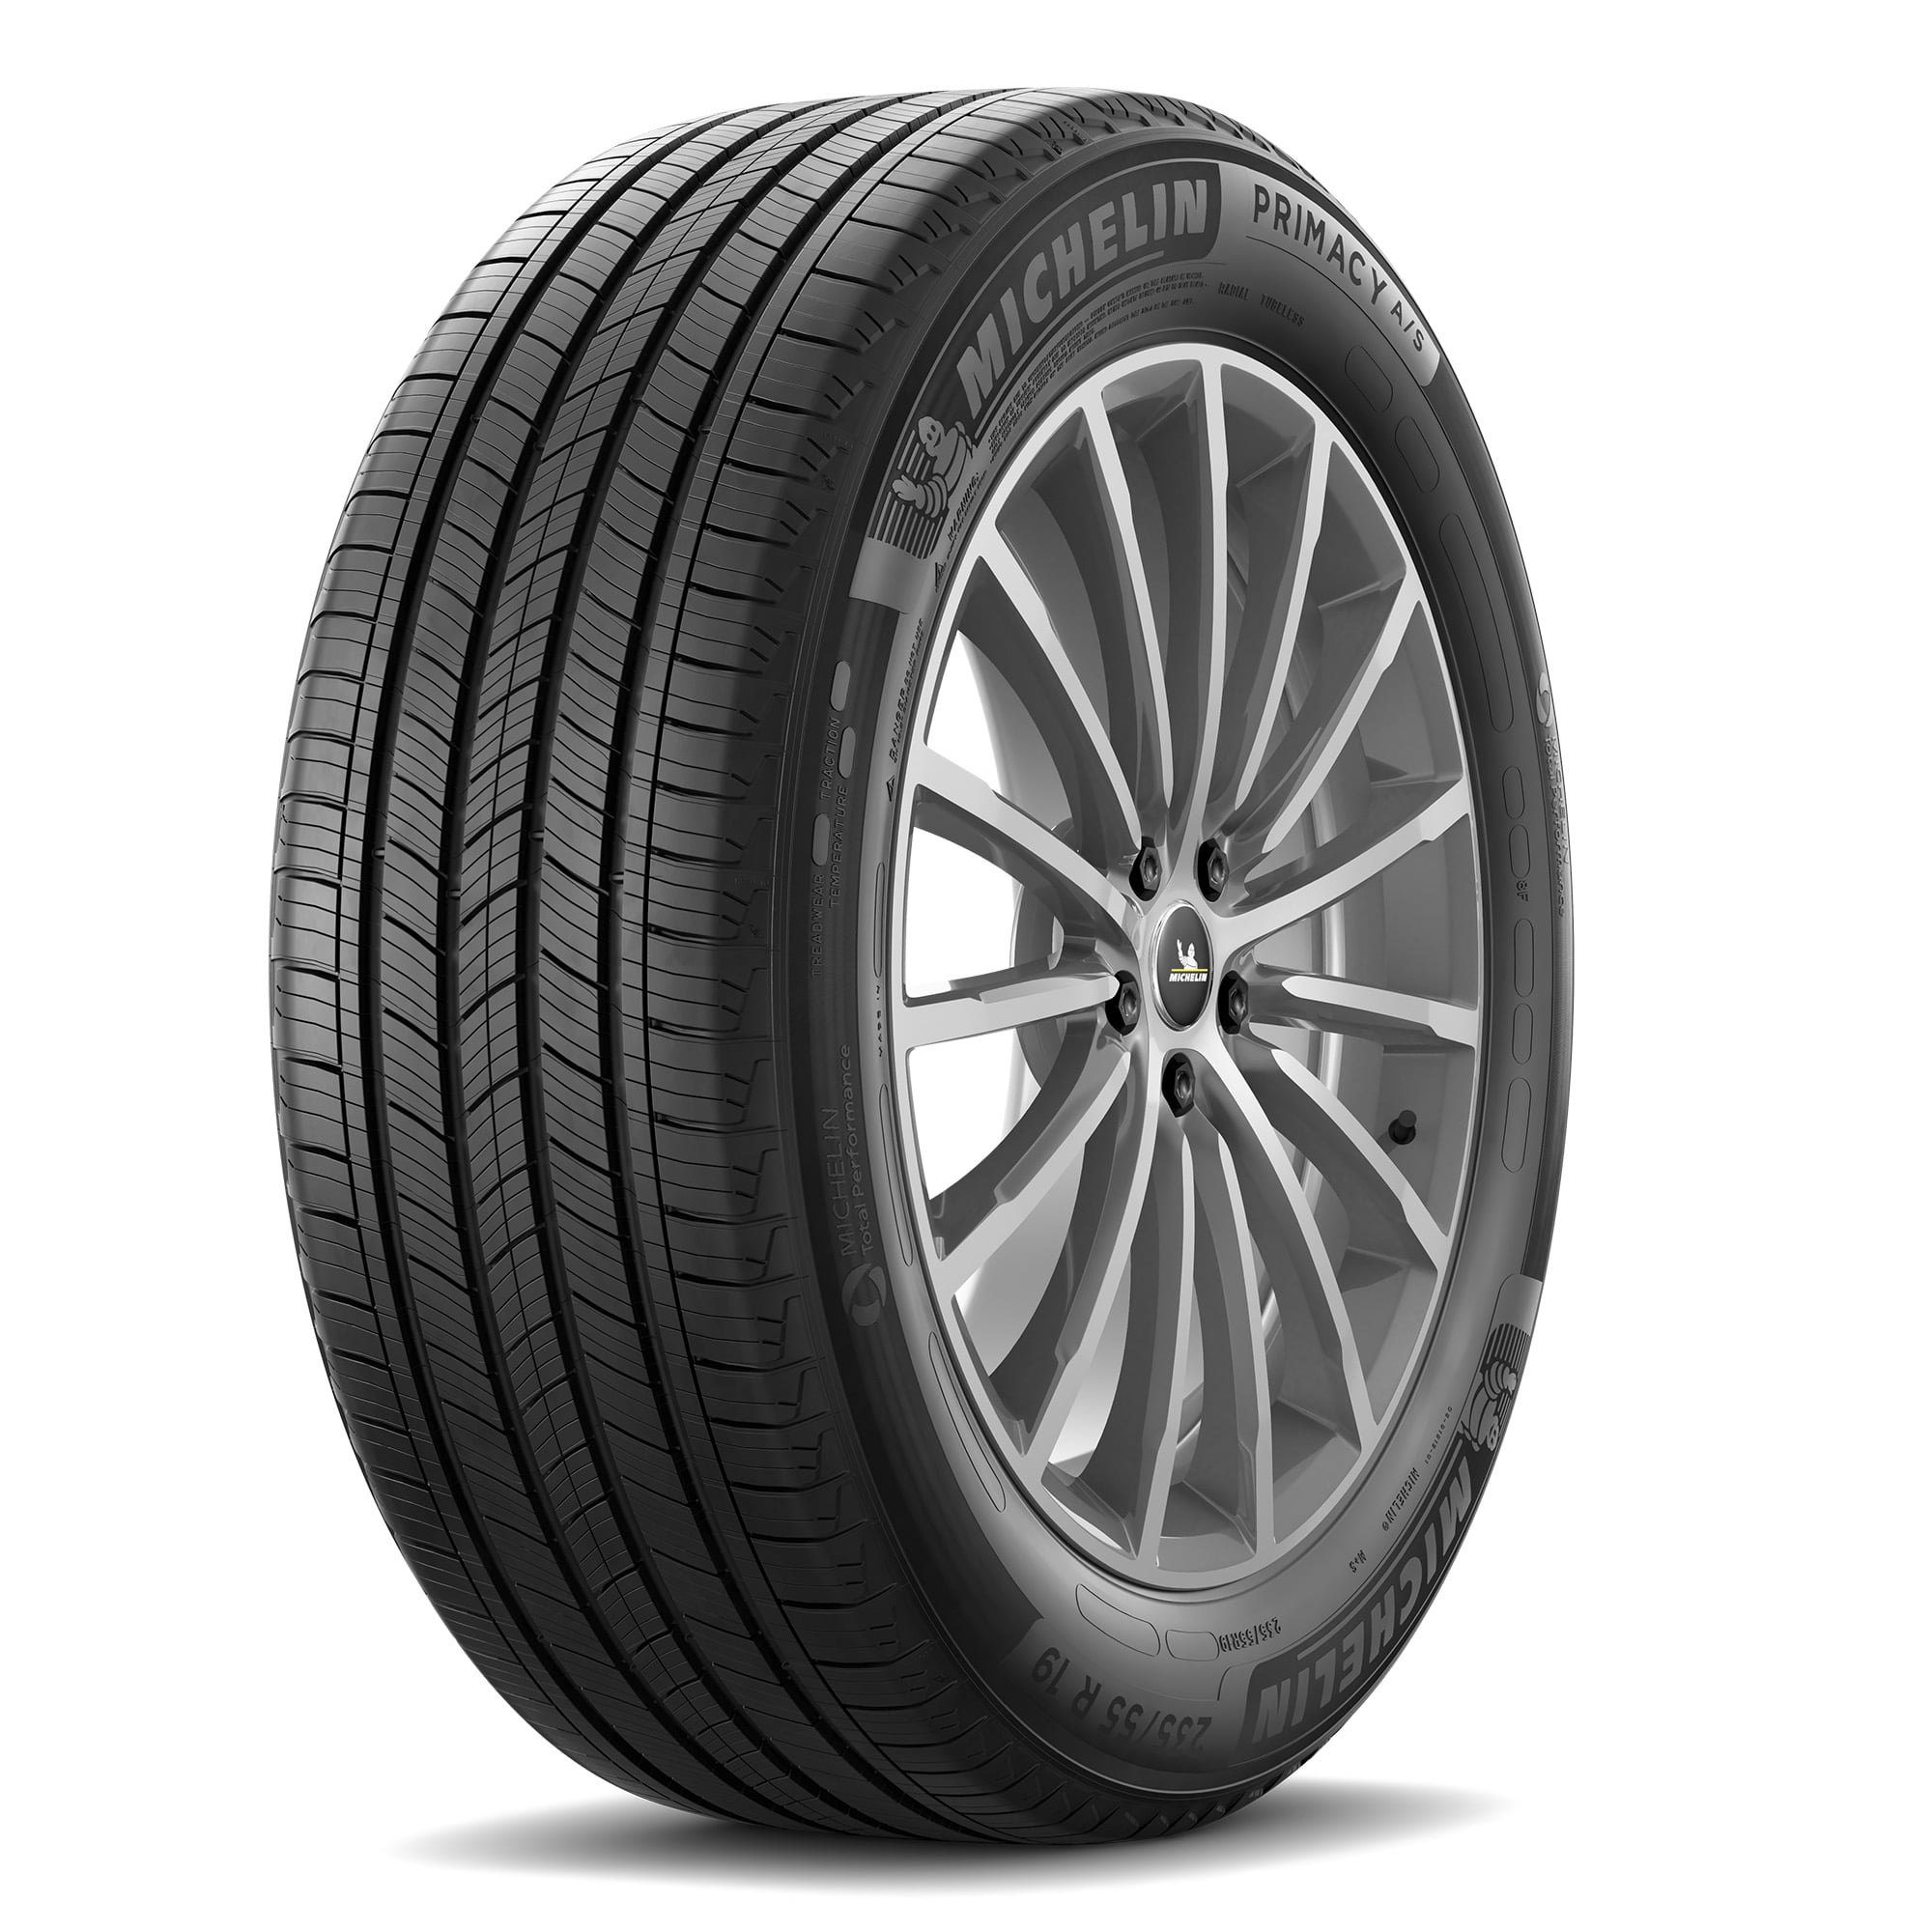 Dunlop Grandtrek ST30 225/60R18 100H A/S All Season Tire - Walmart.com